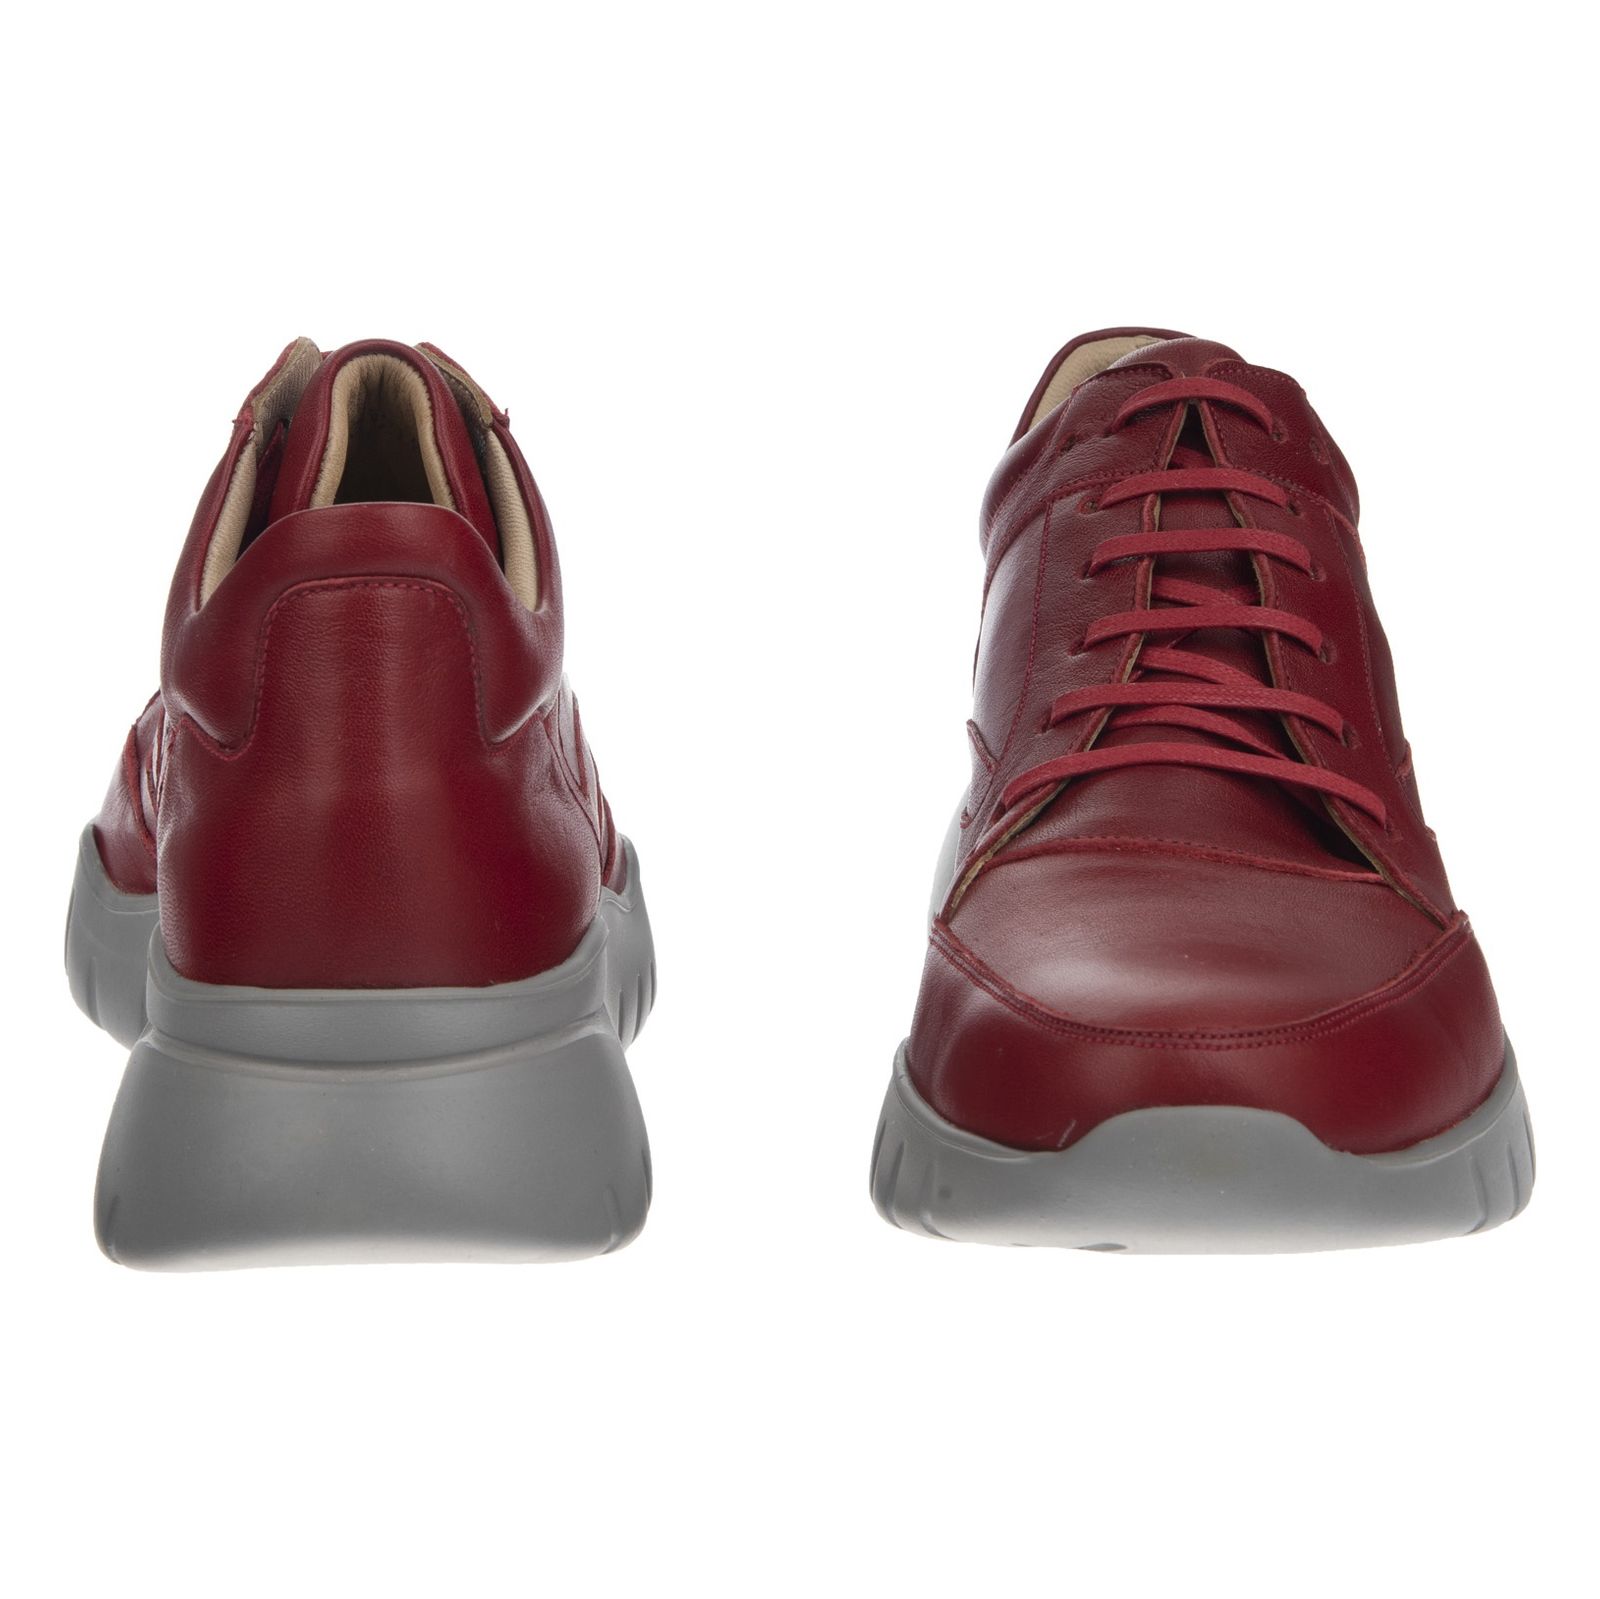 کفش روزمره زنانه برتونیکس مدل 939-24 - قرمز - 4